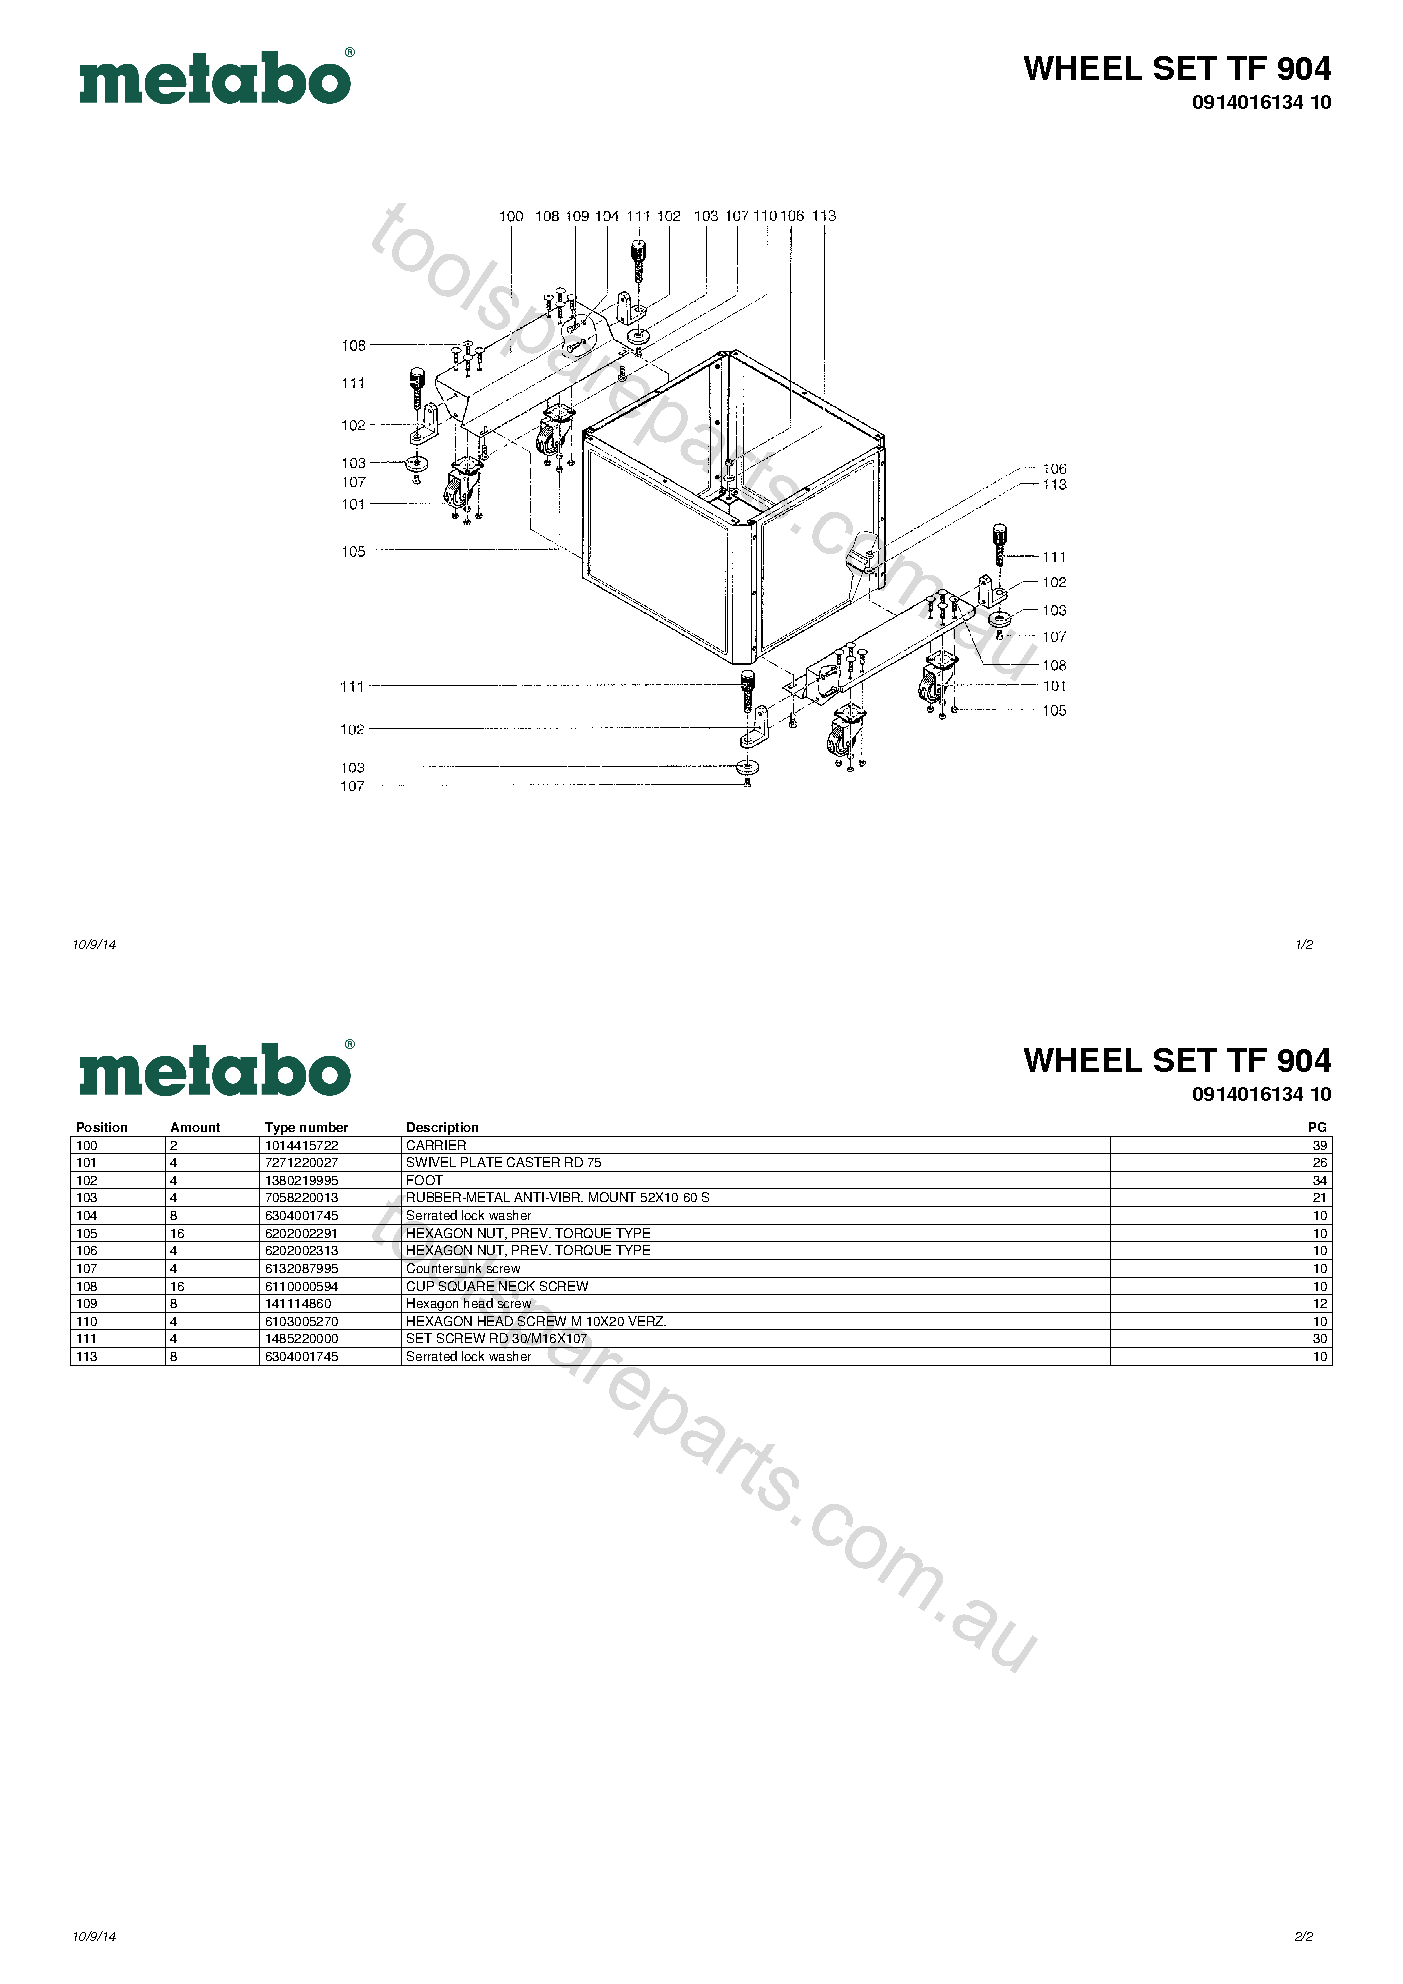 Metabo WHEEL SET TF 904 0914016134 10  Diagram 1